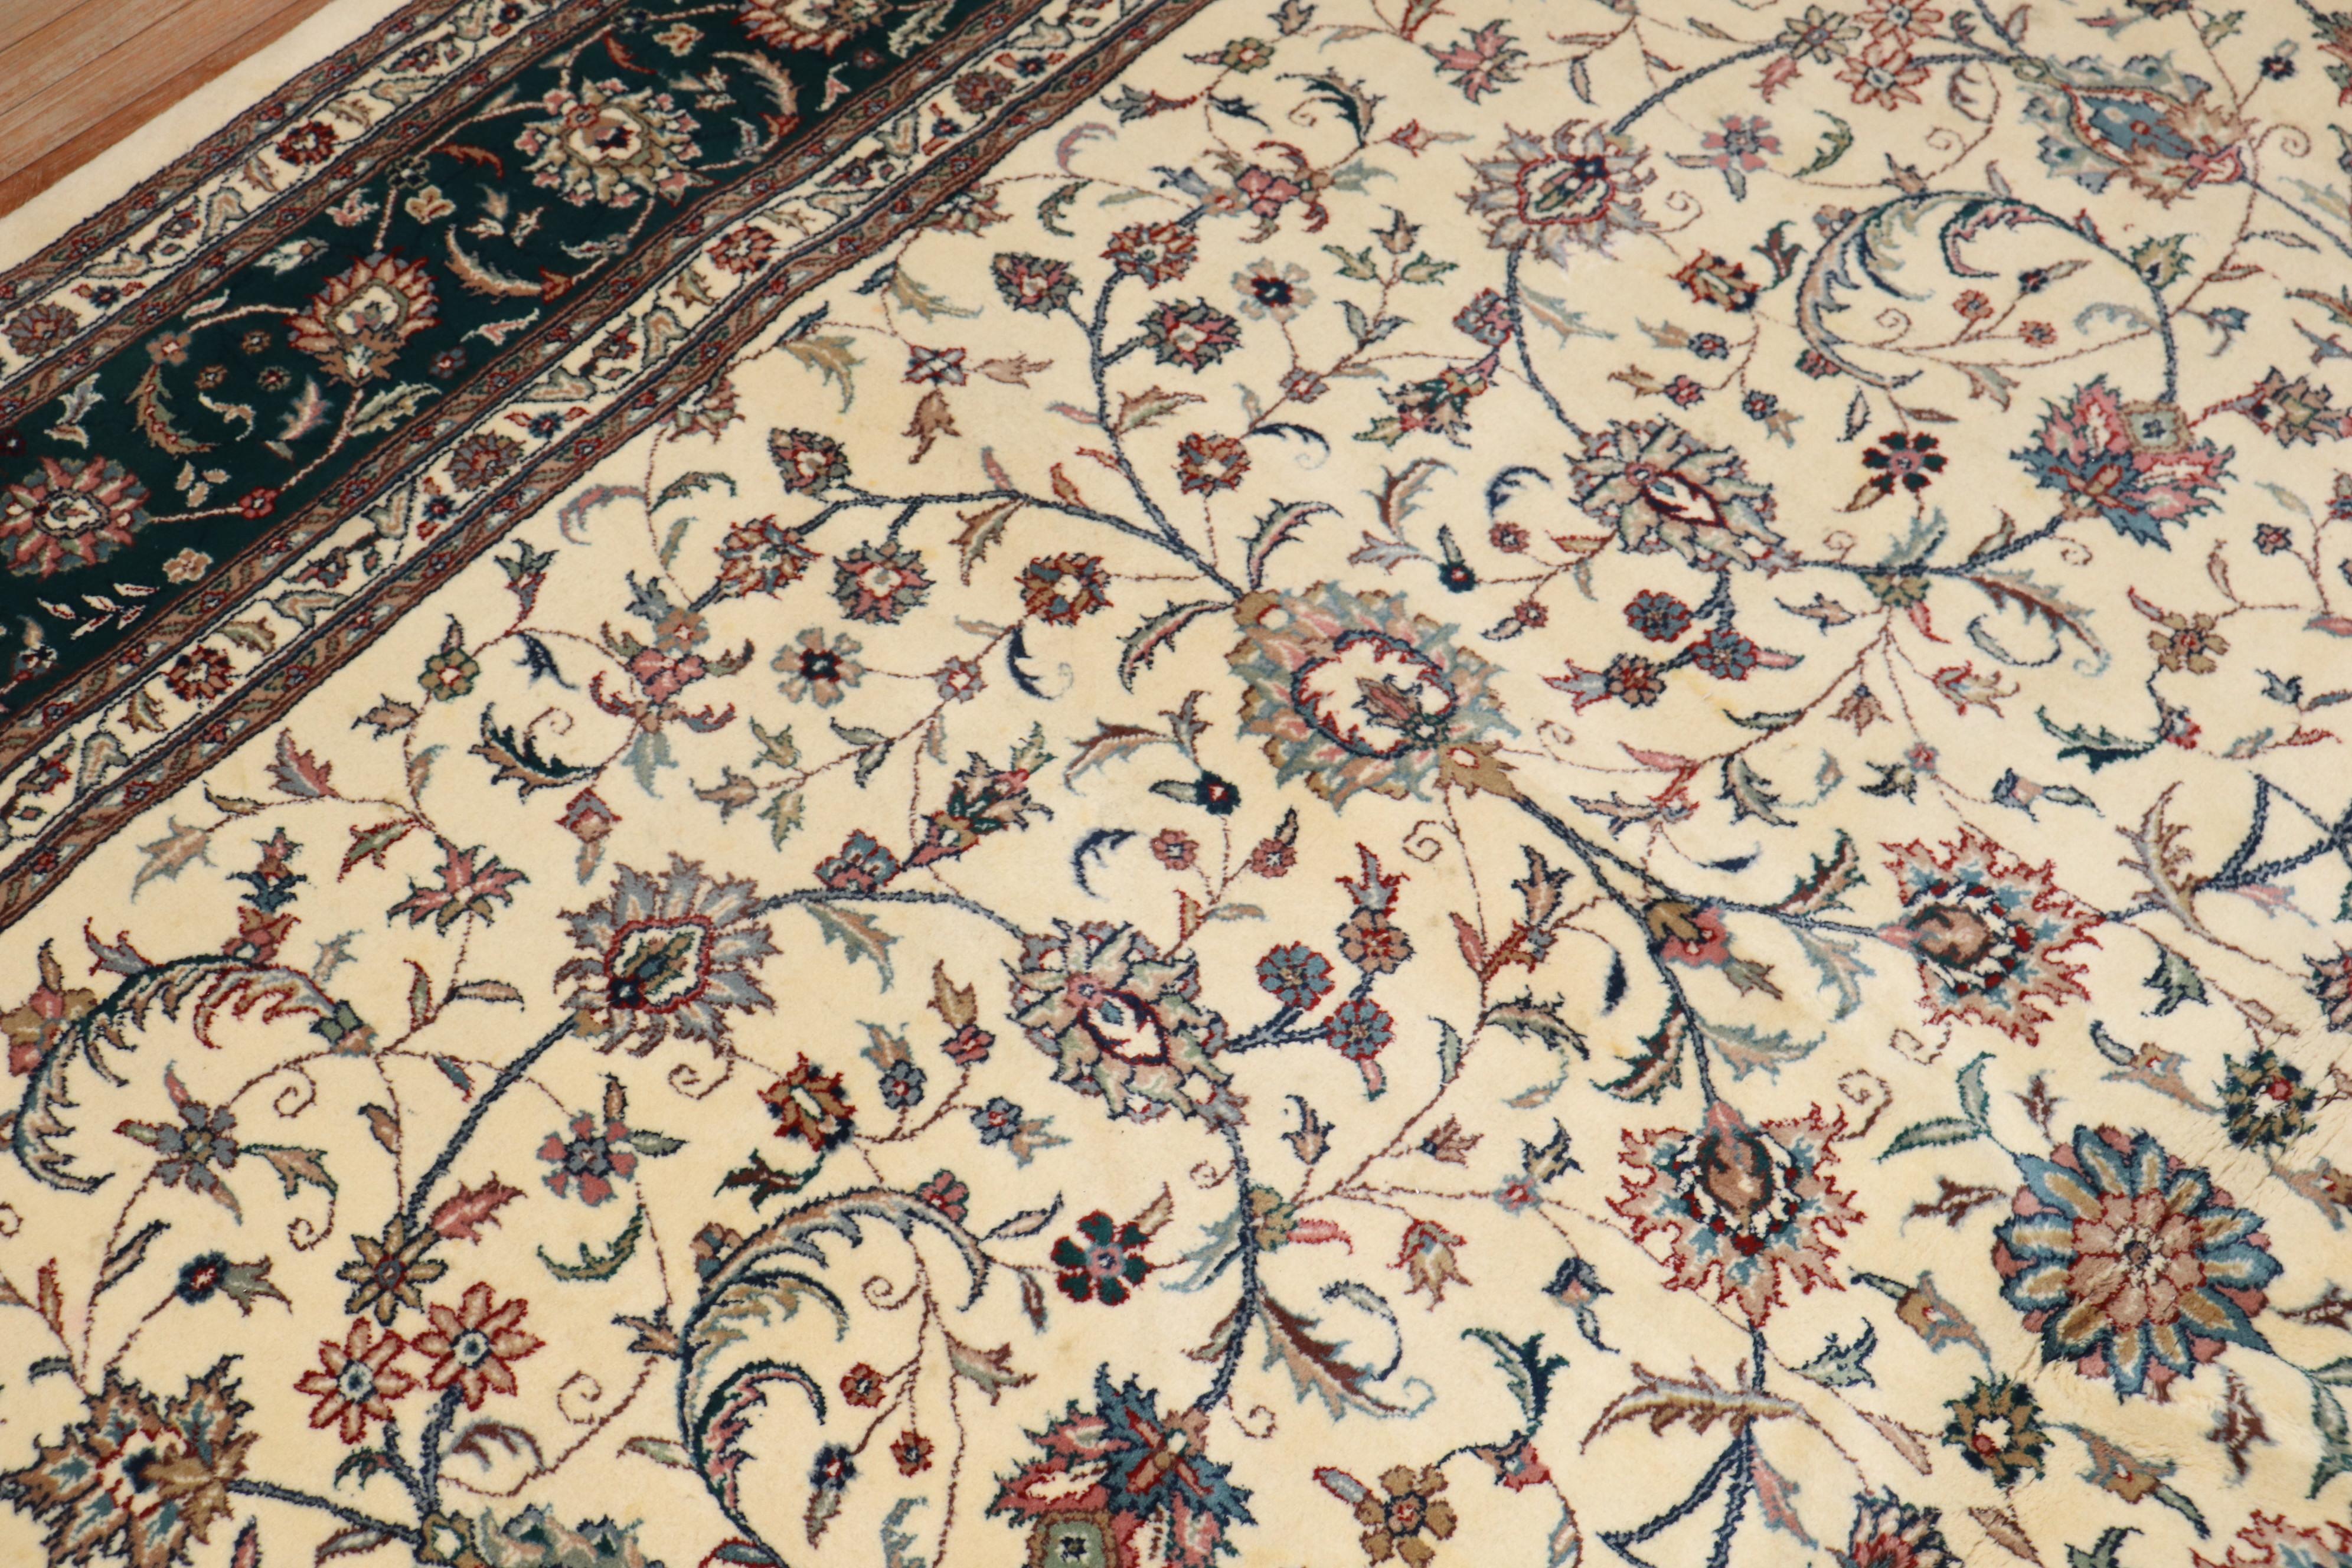 Zimmergroßer indischer Teppich mit einem floralen Muster auf elfenbeinfarbenem Grund. Umrandung in sattem Grün

Maße: 10' x 13'3''